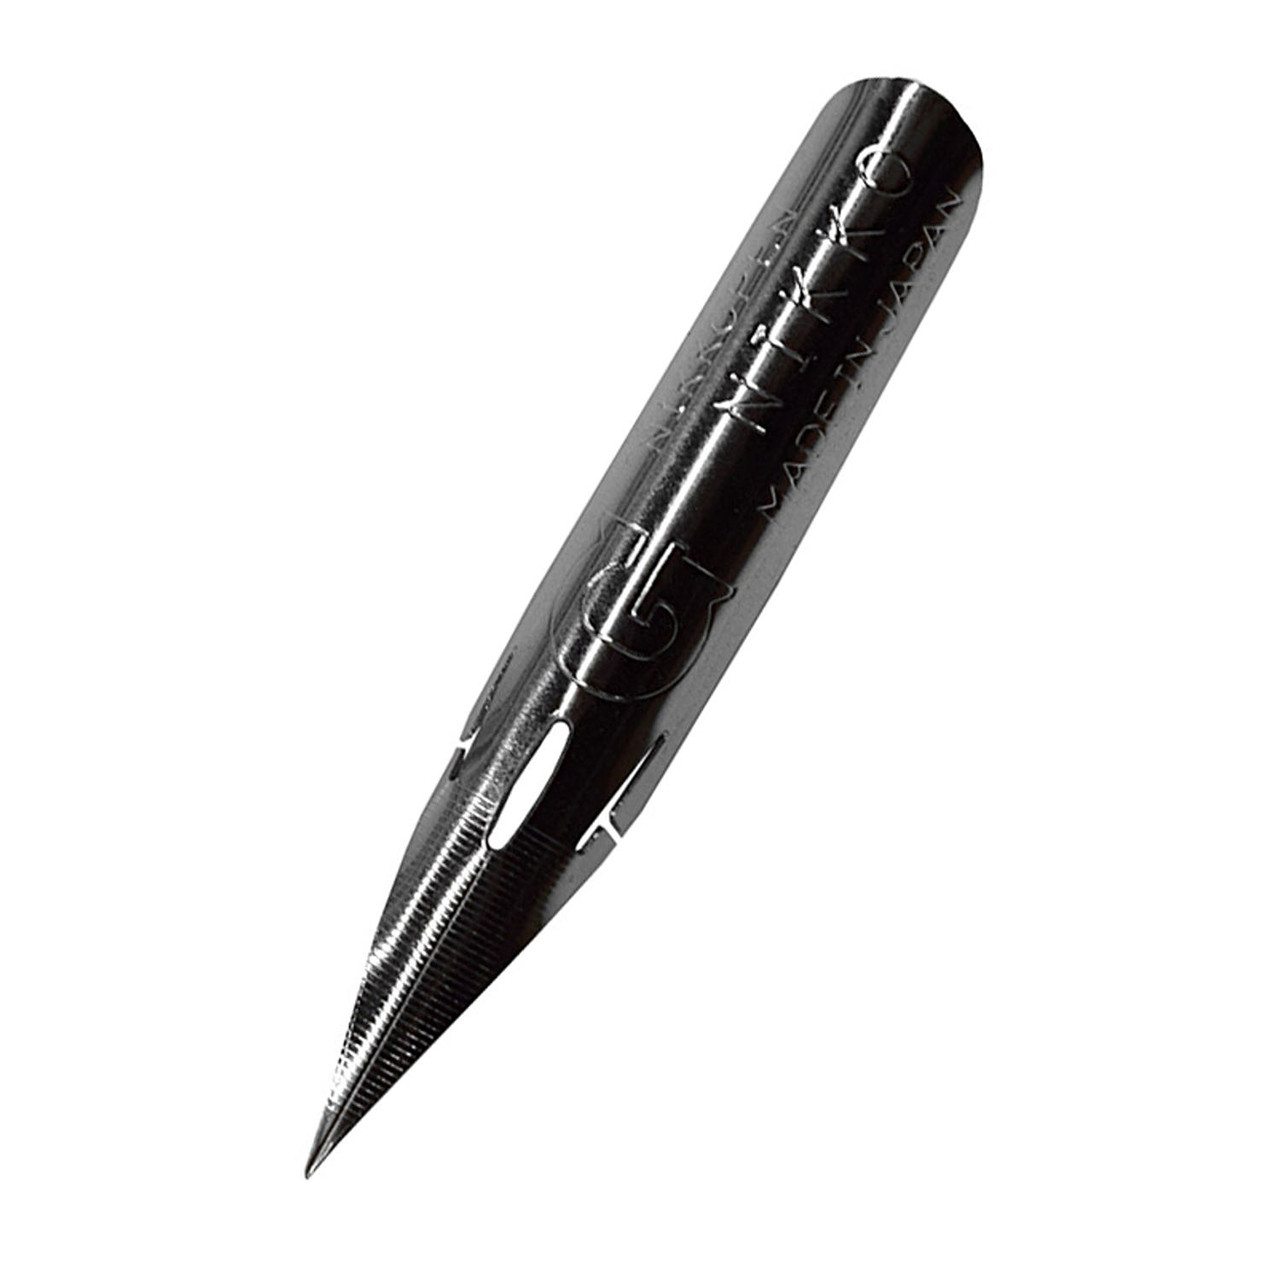 Nikko Dip Pen Nib - G - Pack of 10